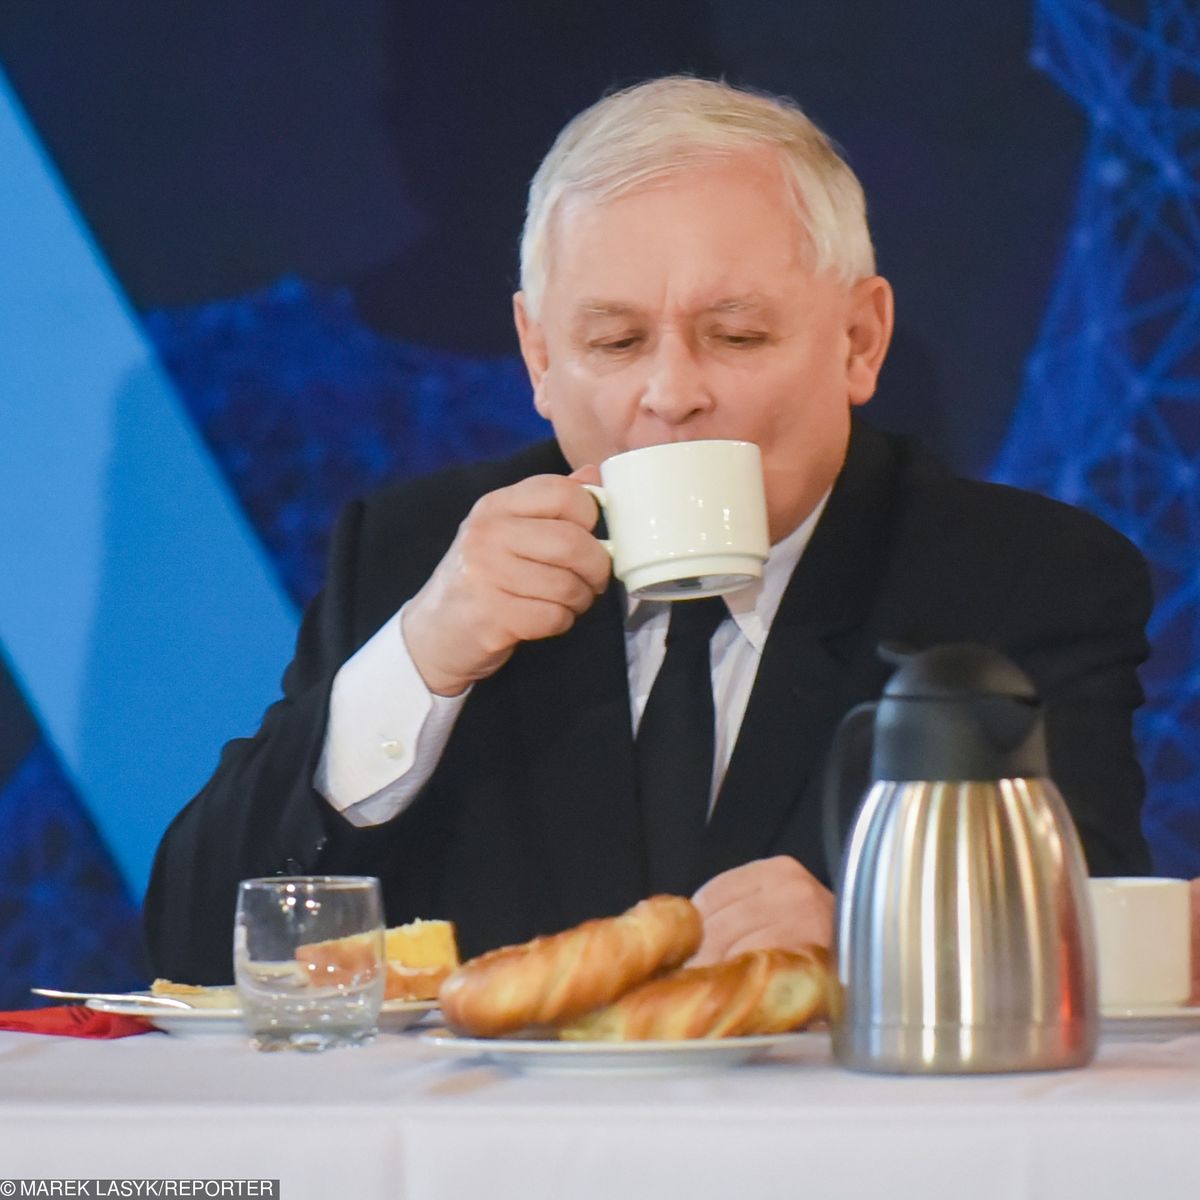 Kaczyński i sojowa latte. Urzędnicy chcieli uderzyć w hipsterów, powstrzymał ich prezes